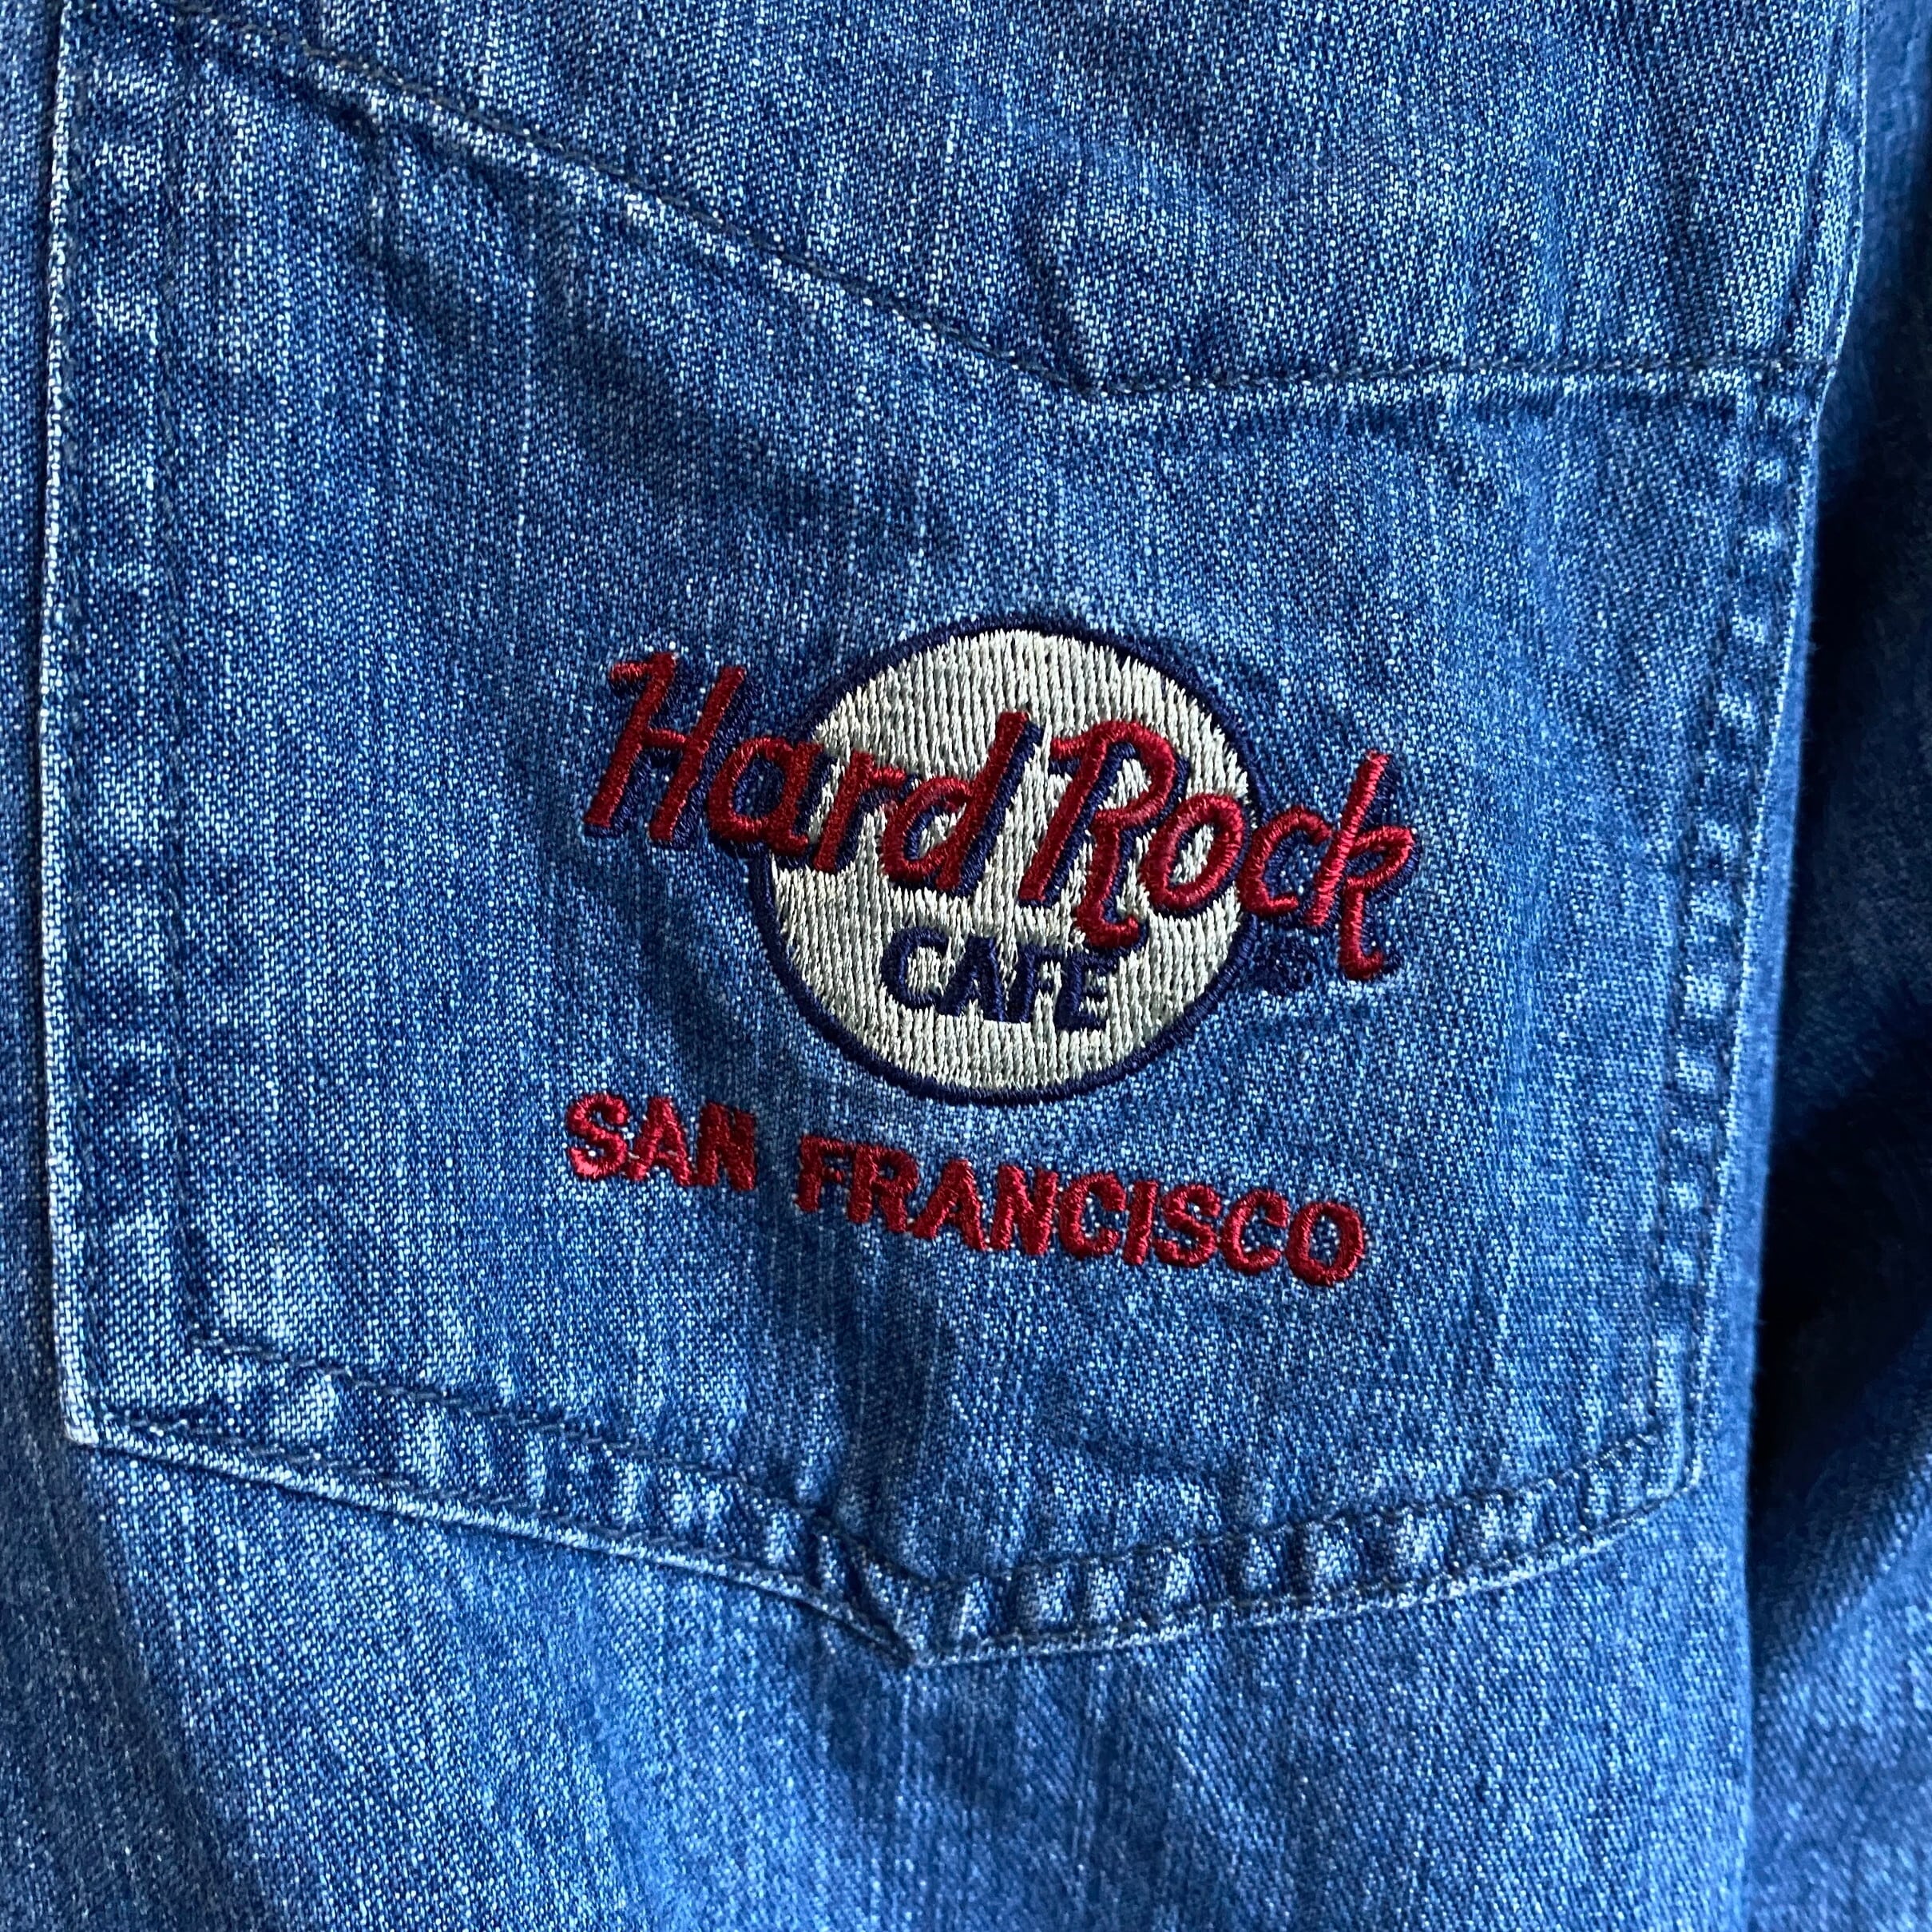 古着屋KP_シャツハードロックカフェ 刺繍 SAN FRANCISCO デニムシャツ ビッグサイズ